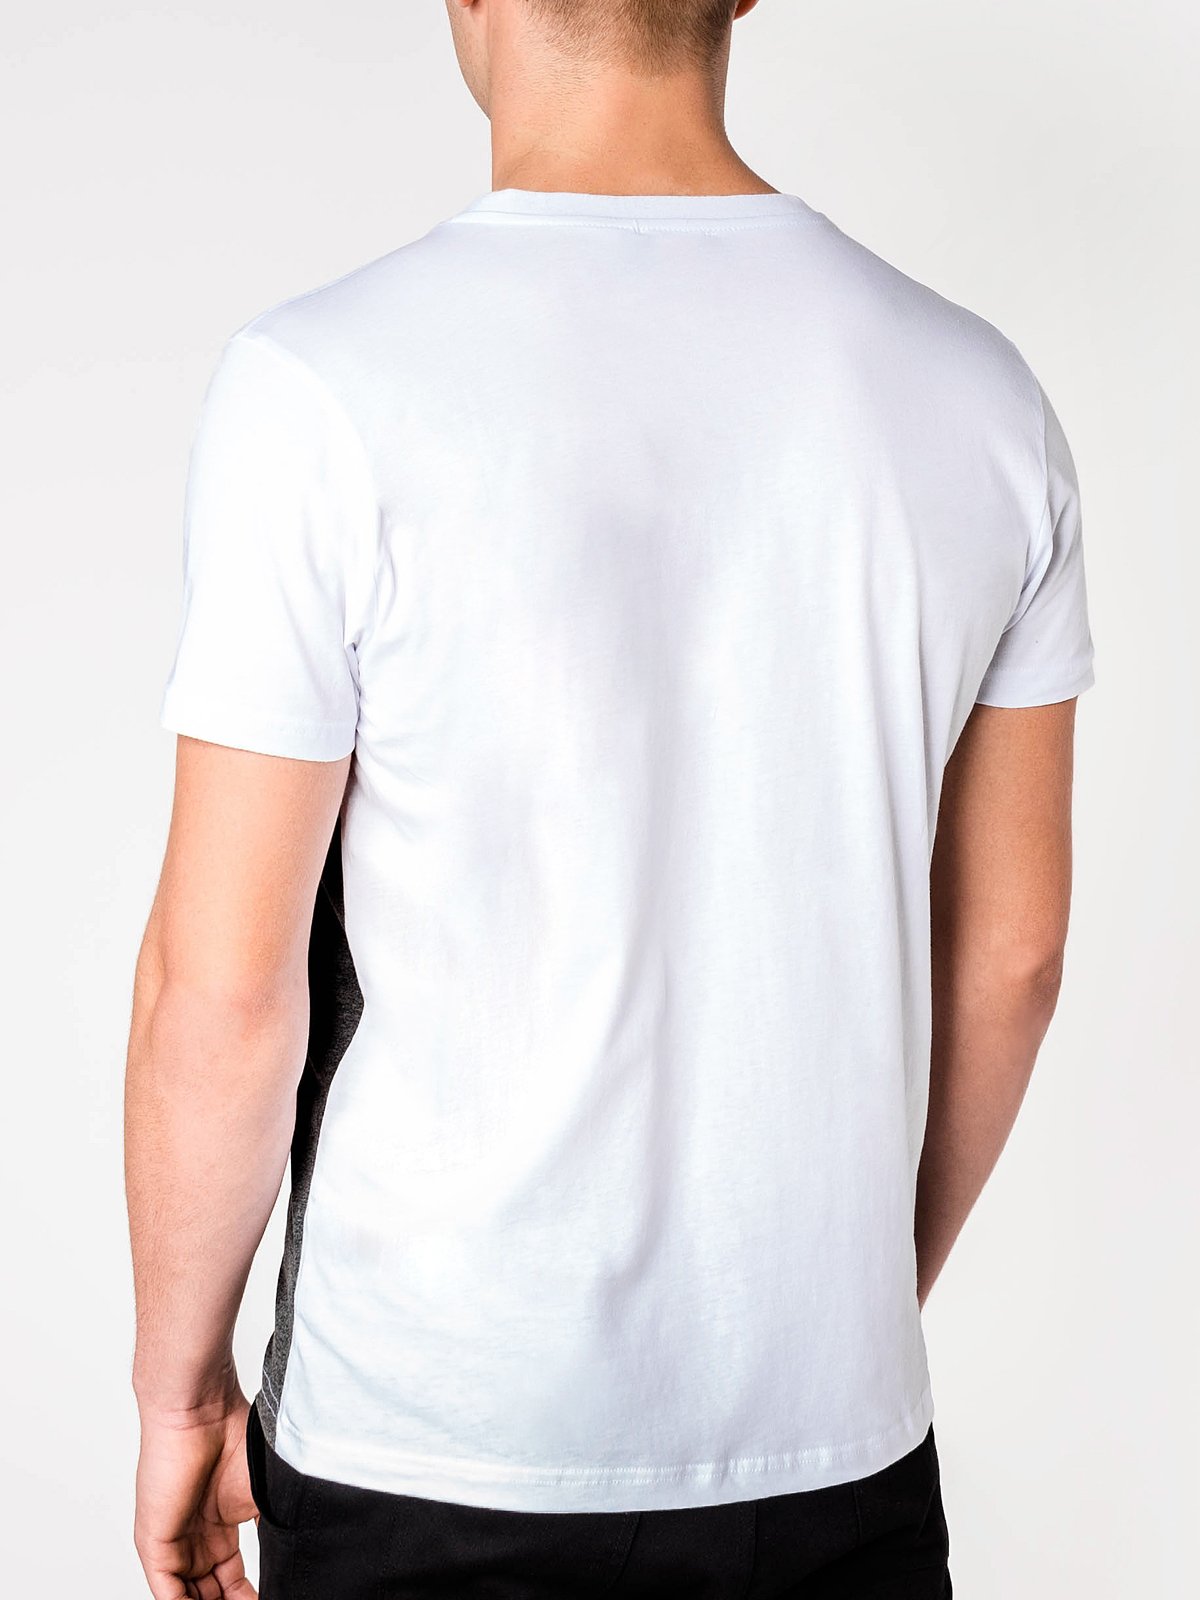 Men's plain t-shirt S844 - orange/dark grey | MODONE wholesale ...